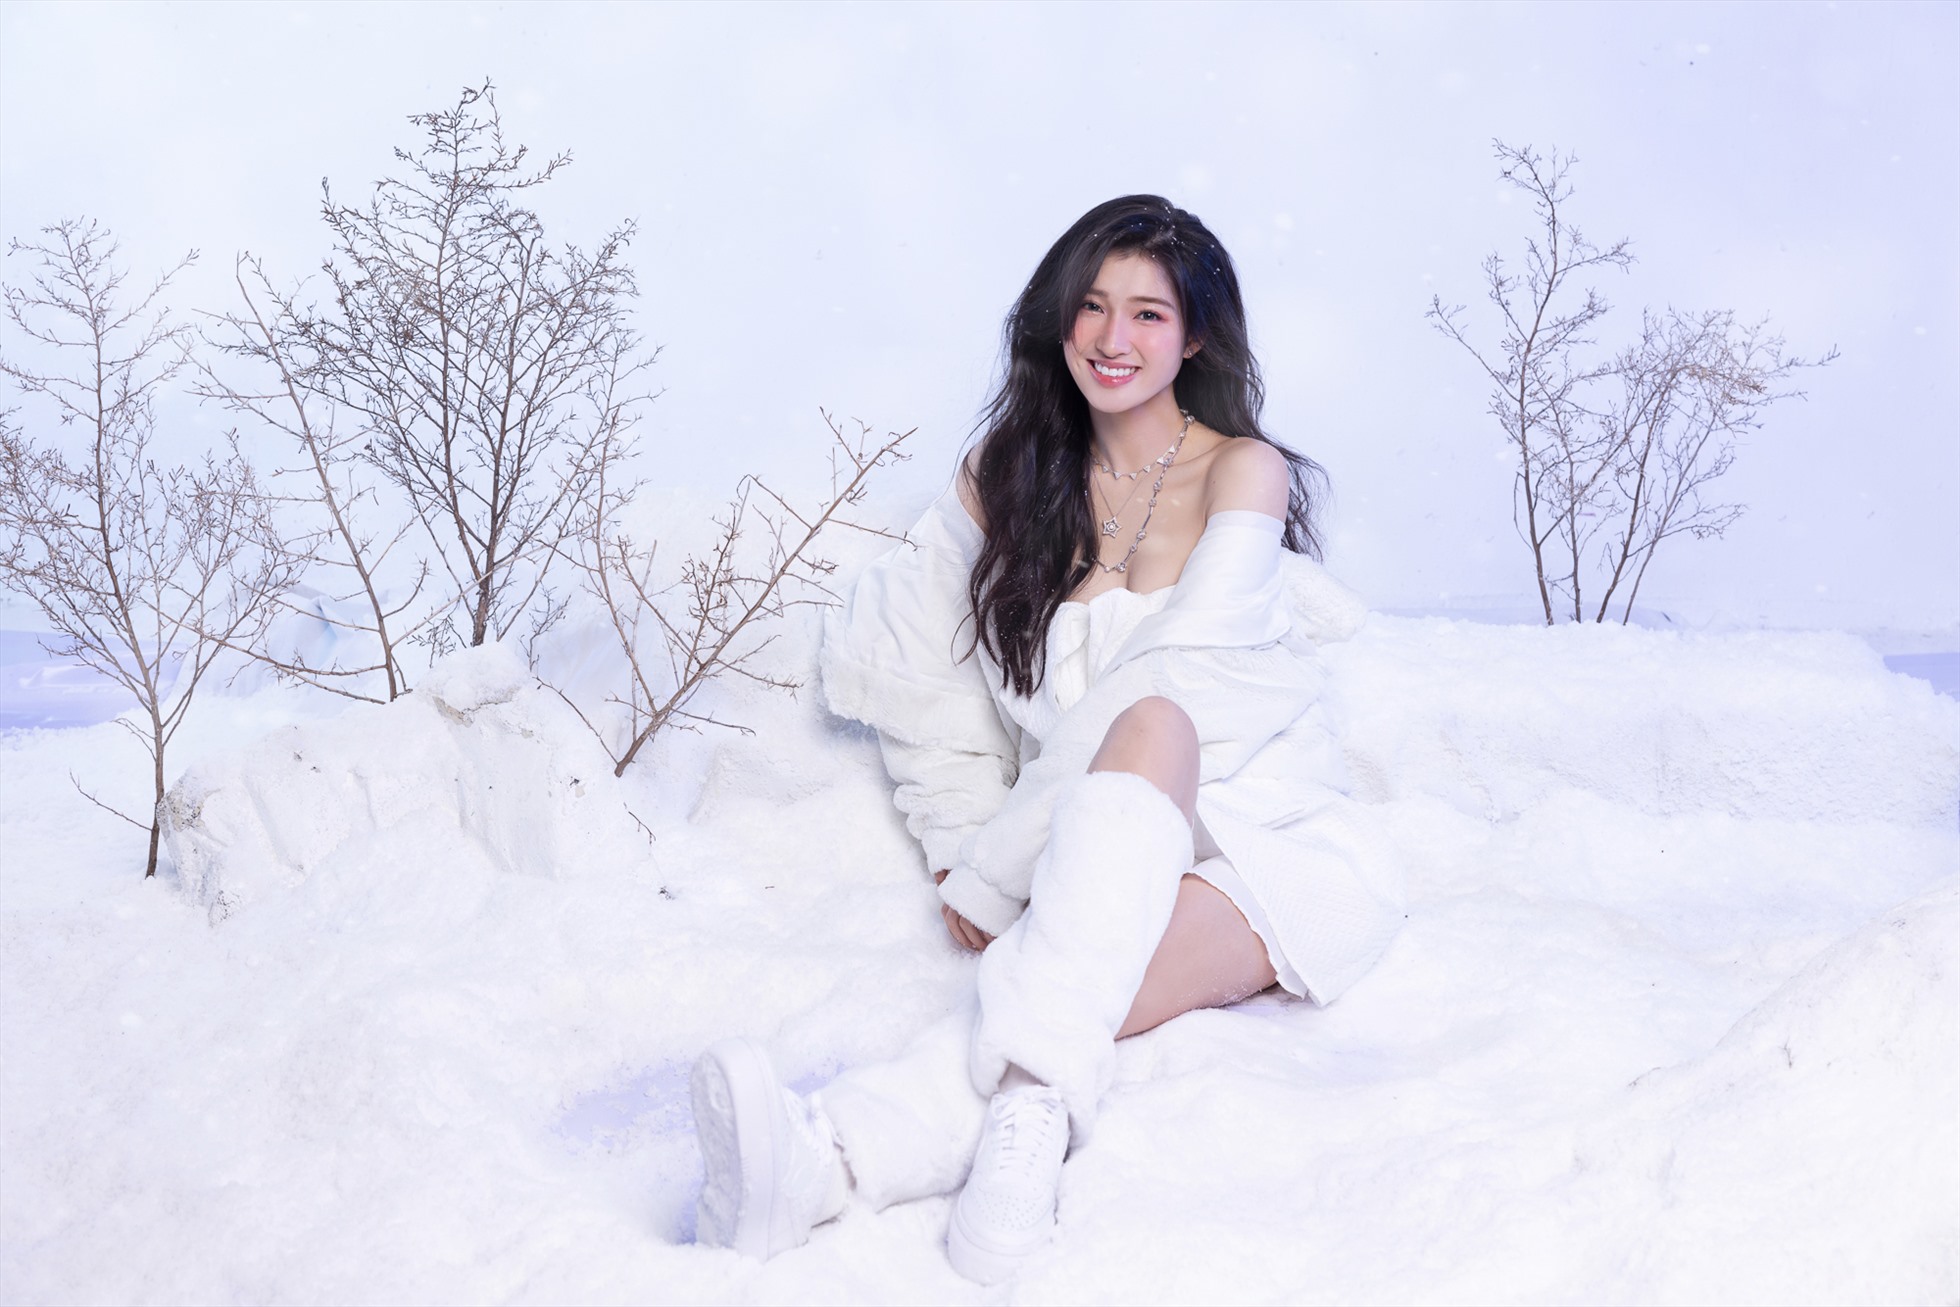 Trong bộ ảnh đầu tiên, nàng hậu sinh năm 2002 khoác trên mình bộ trang phục mùa đông trẻ trung và năng động với một không gian tràn ngập tuyết rơi cực lãng mạn.